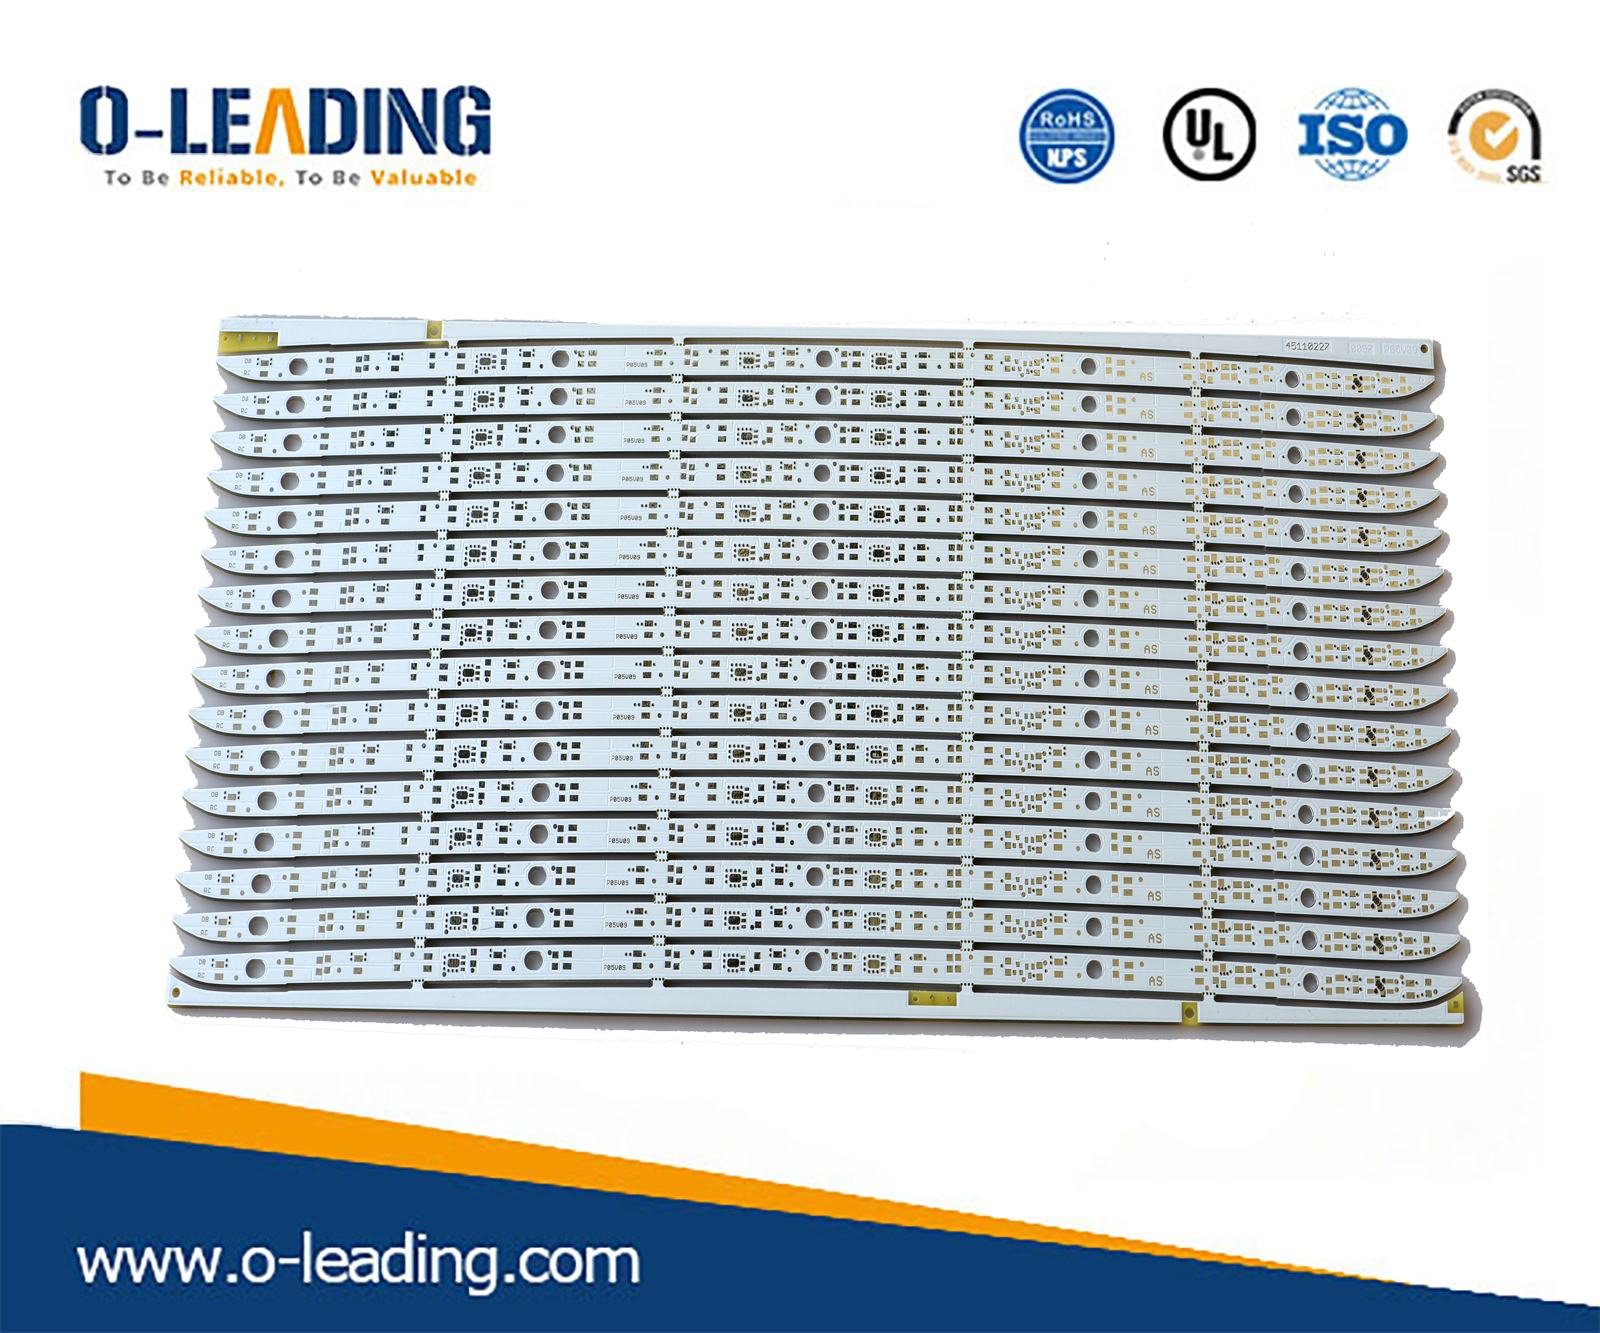 FLEX BOARD proveedor china, fabricante de PCB de un solo lado china, solución de PCB de control remoto